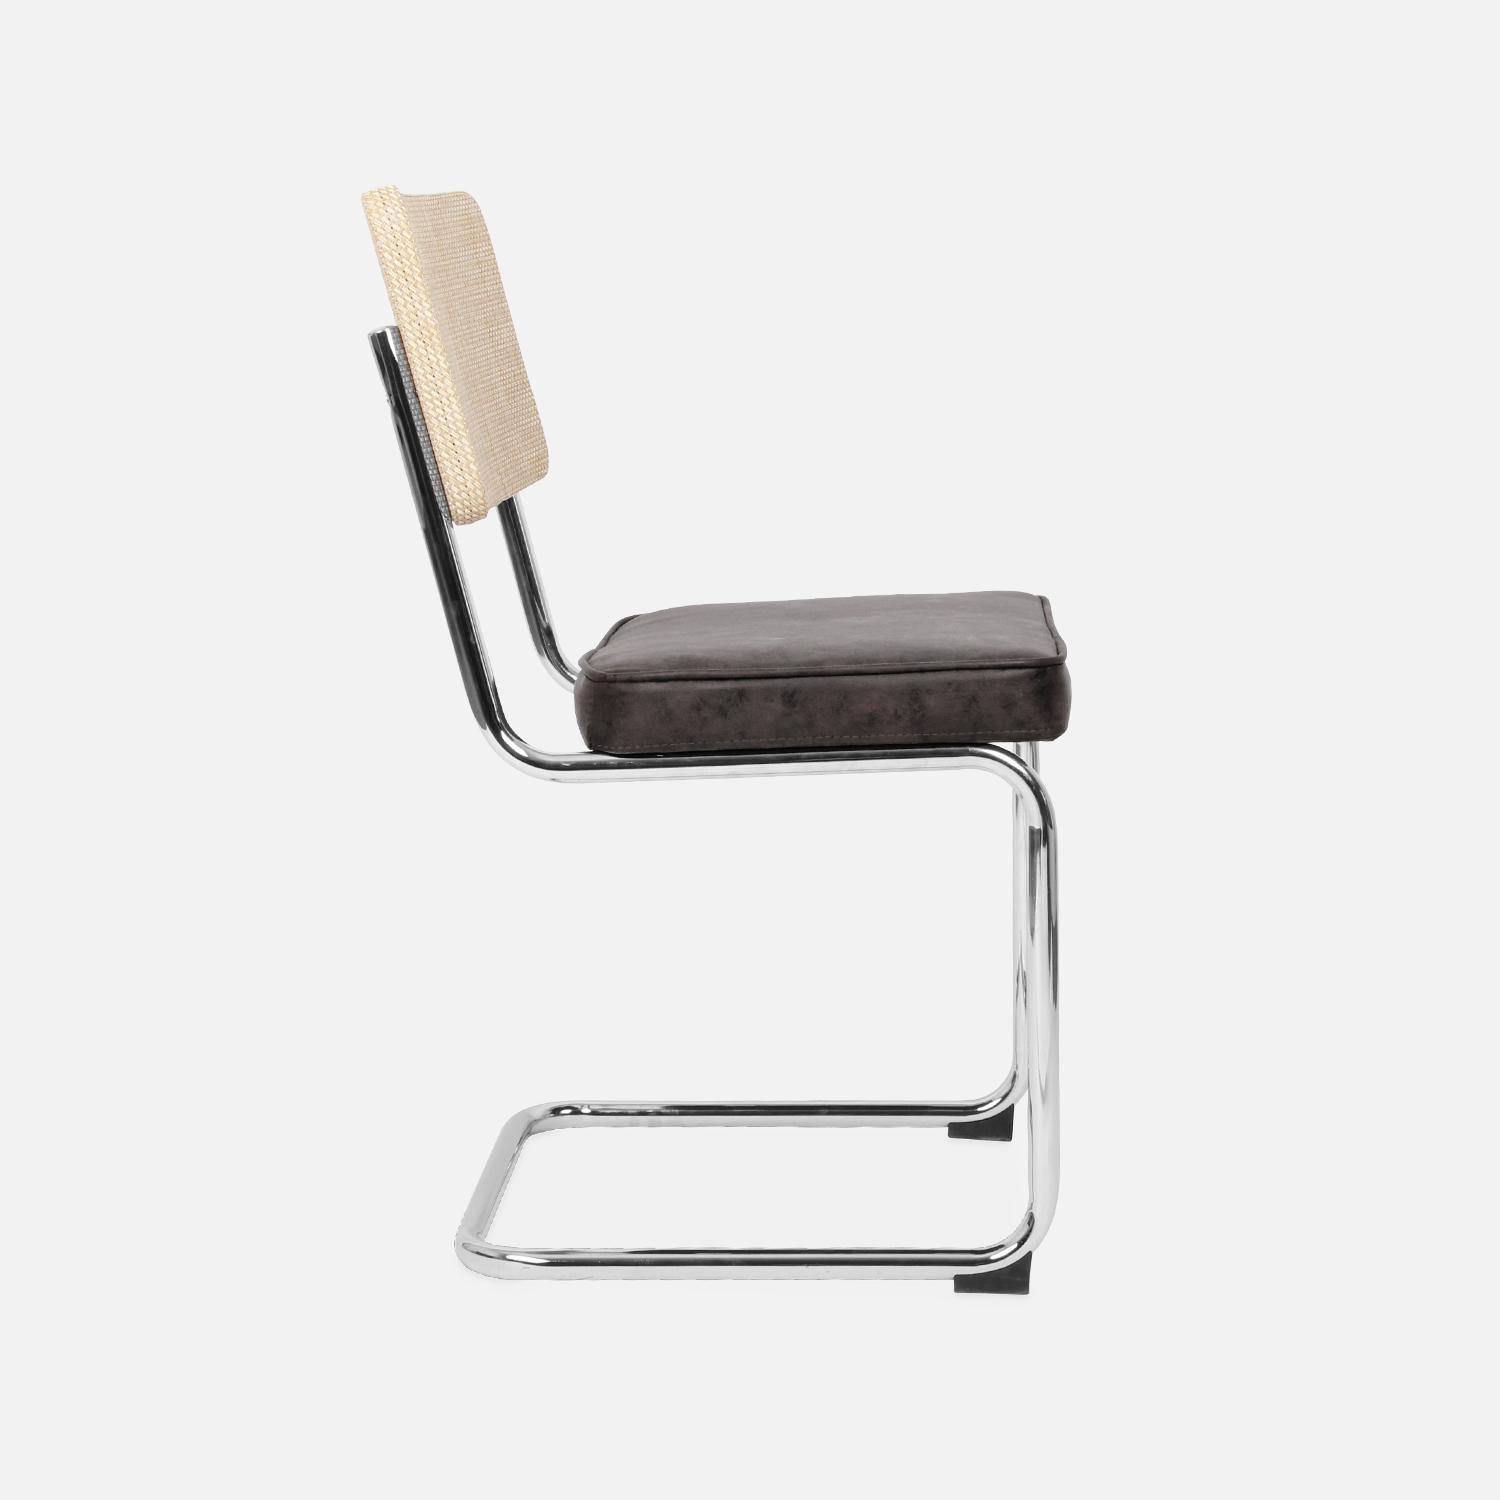 2 sillas cantilever - Maja - tela marrón oscuro y resina efecto ratán, 46 x 54,5 x 84,5cm   Photo6